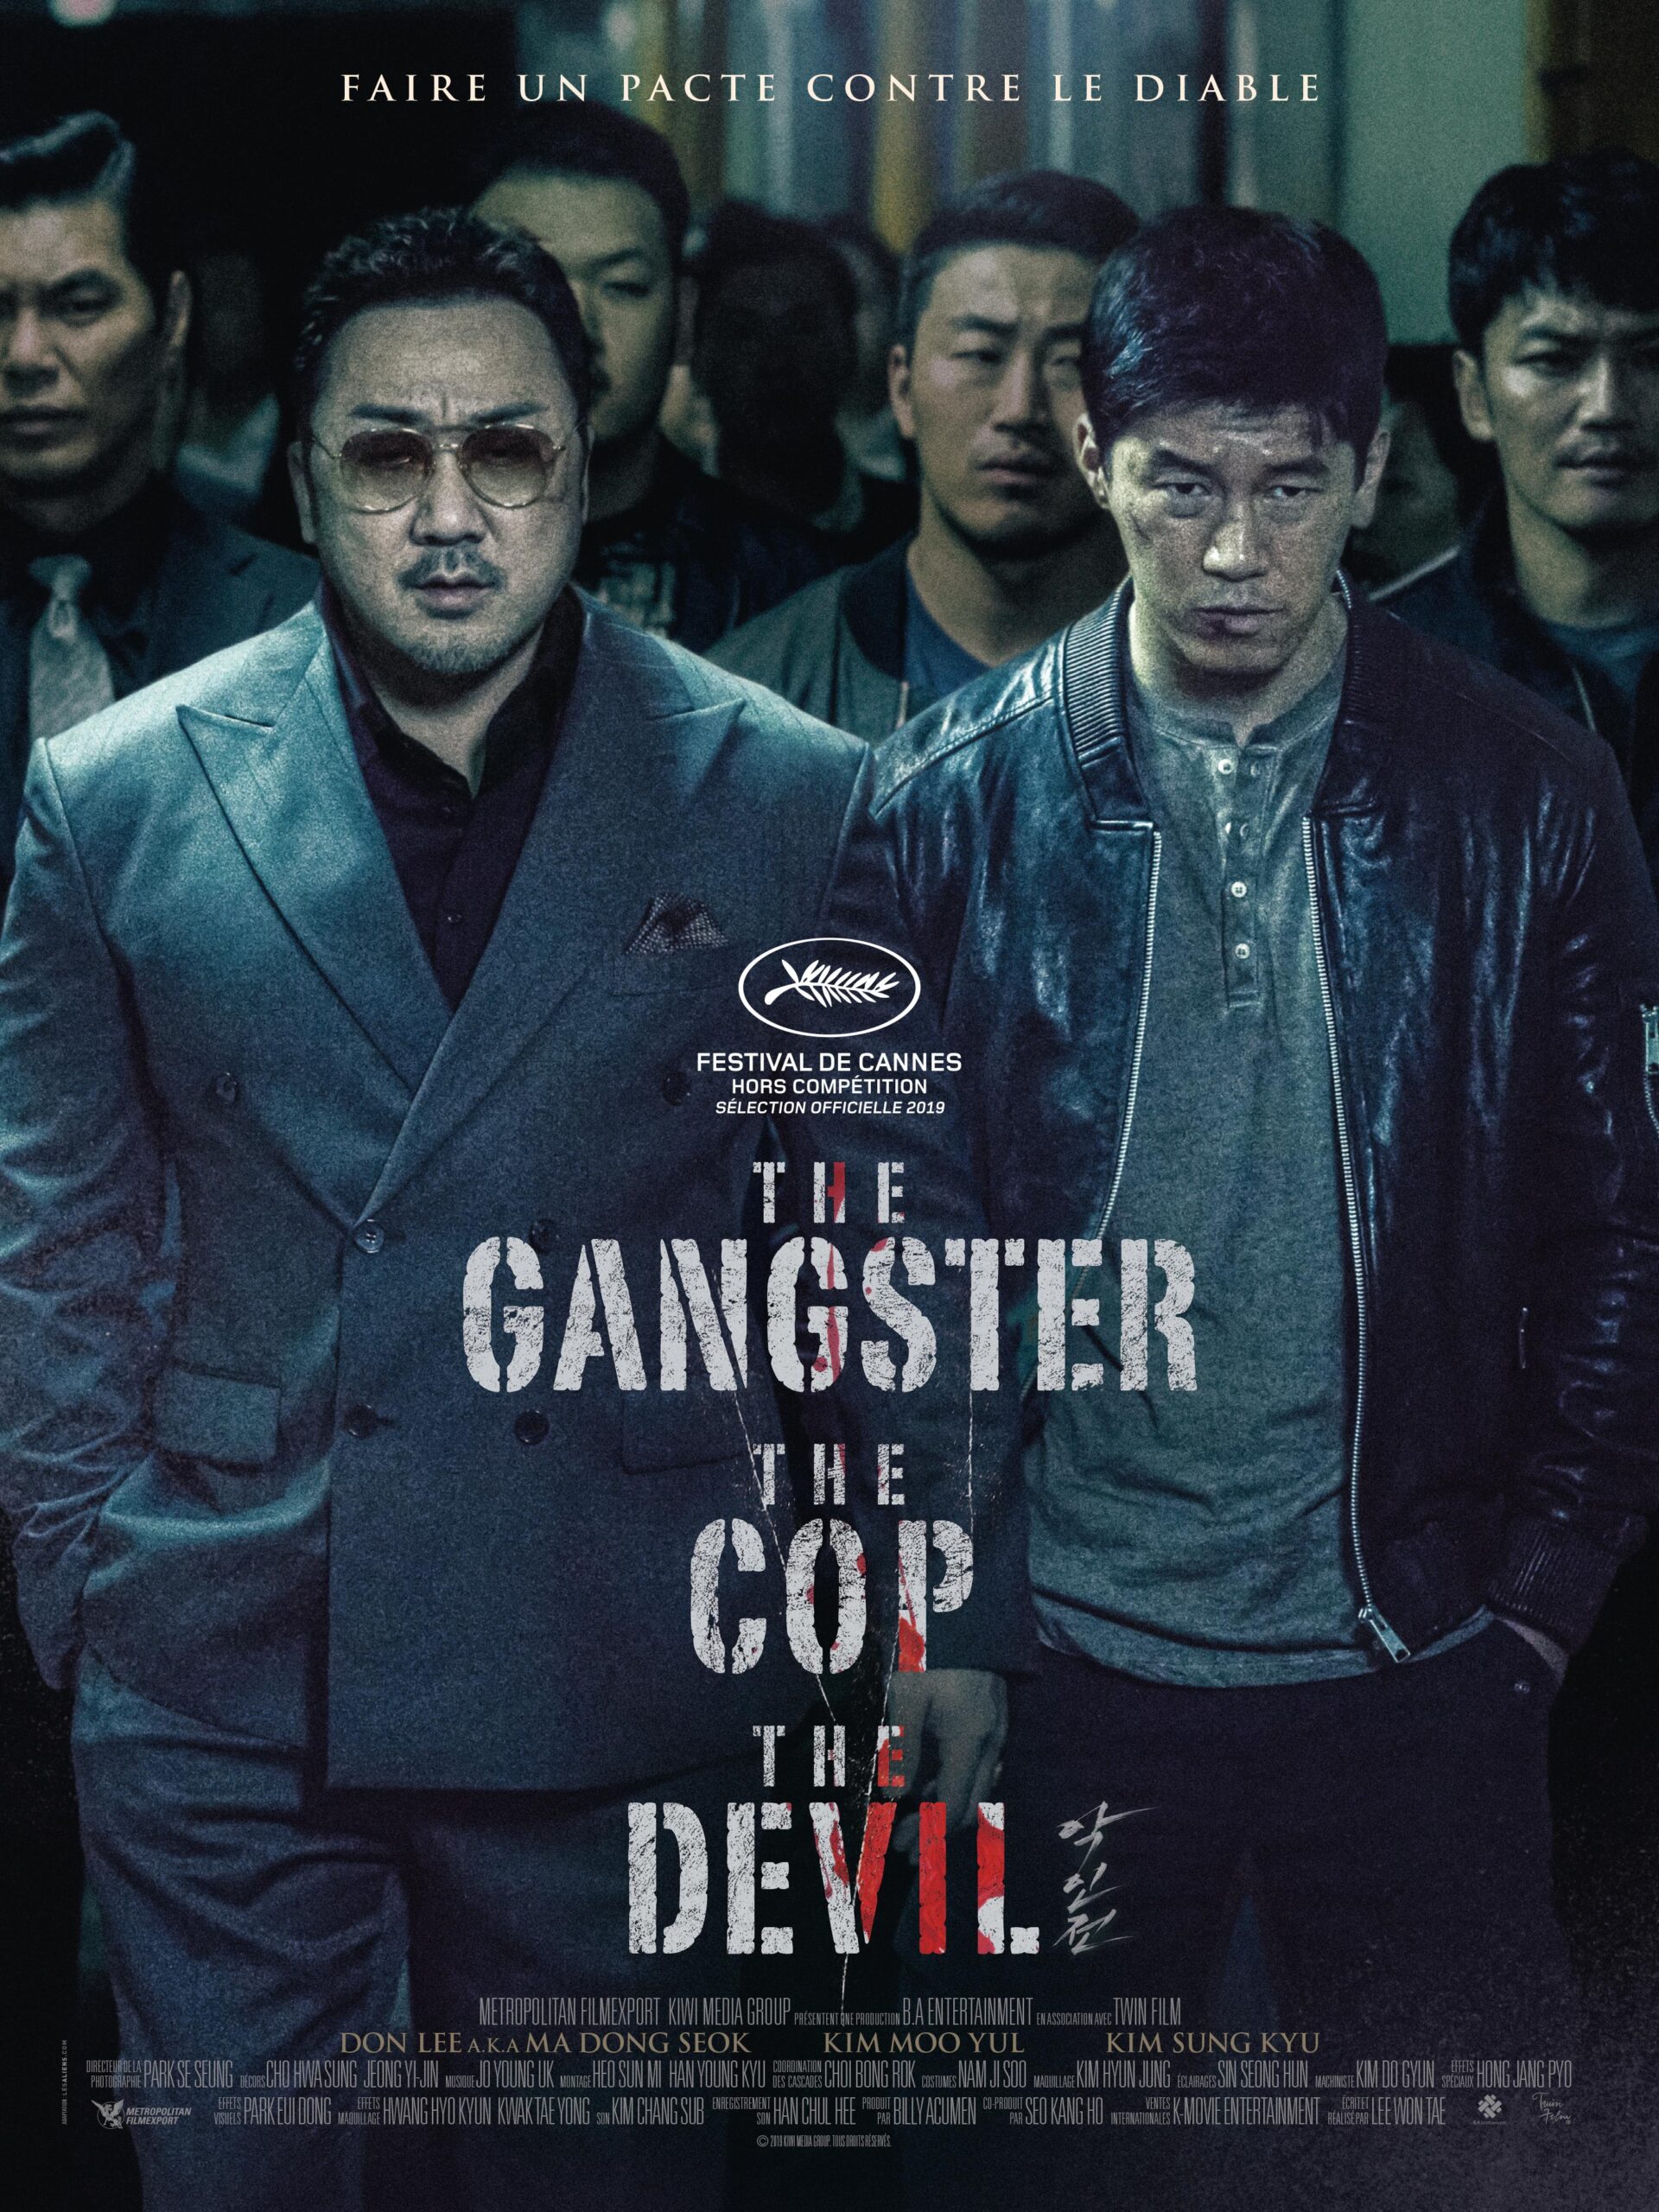 ดูหนังออนไลน์ฟรี The Gangster The Cop The Devil 2019 พากย์ไทย